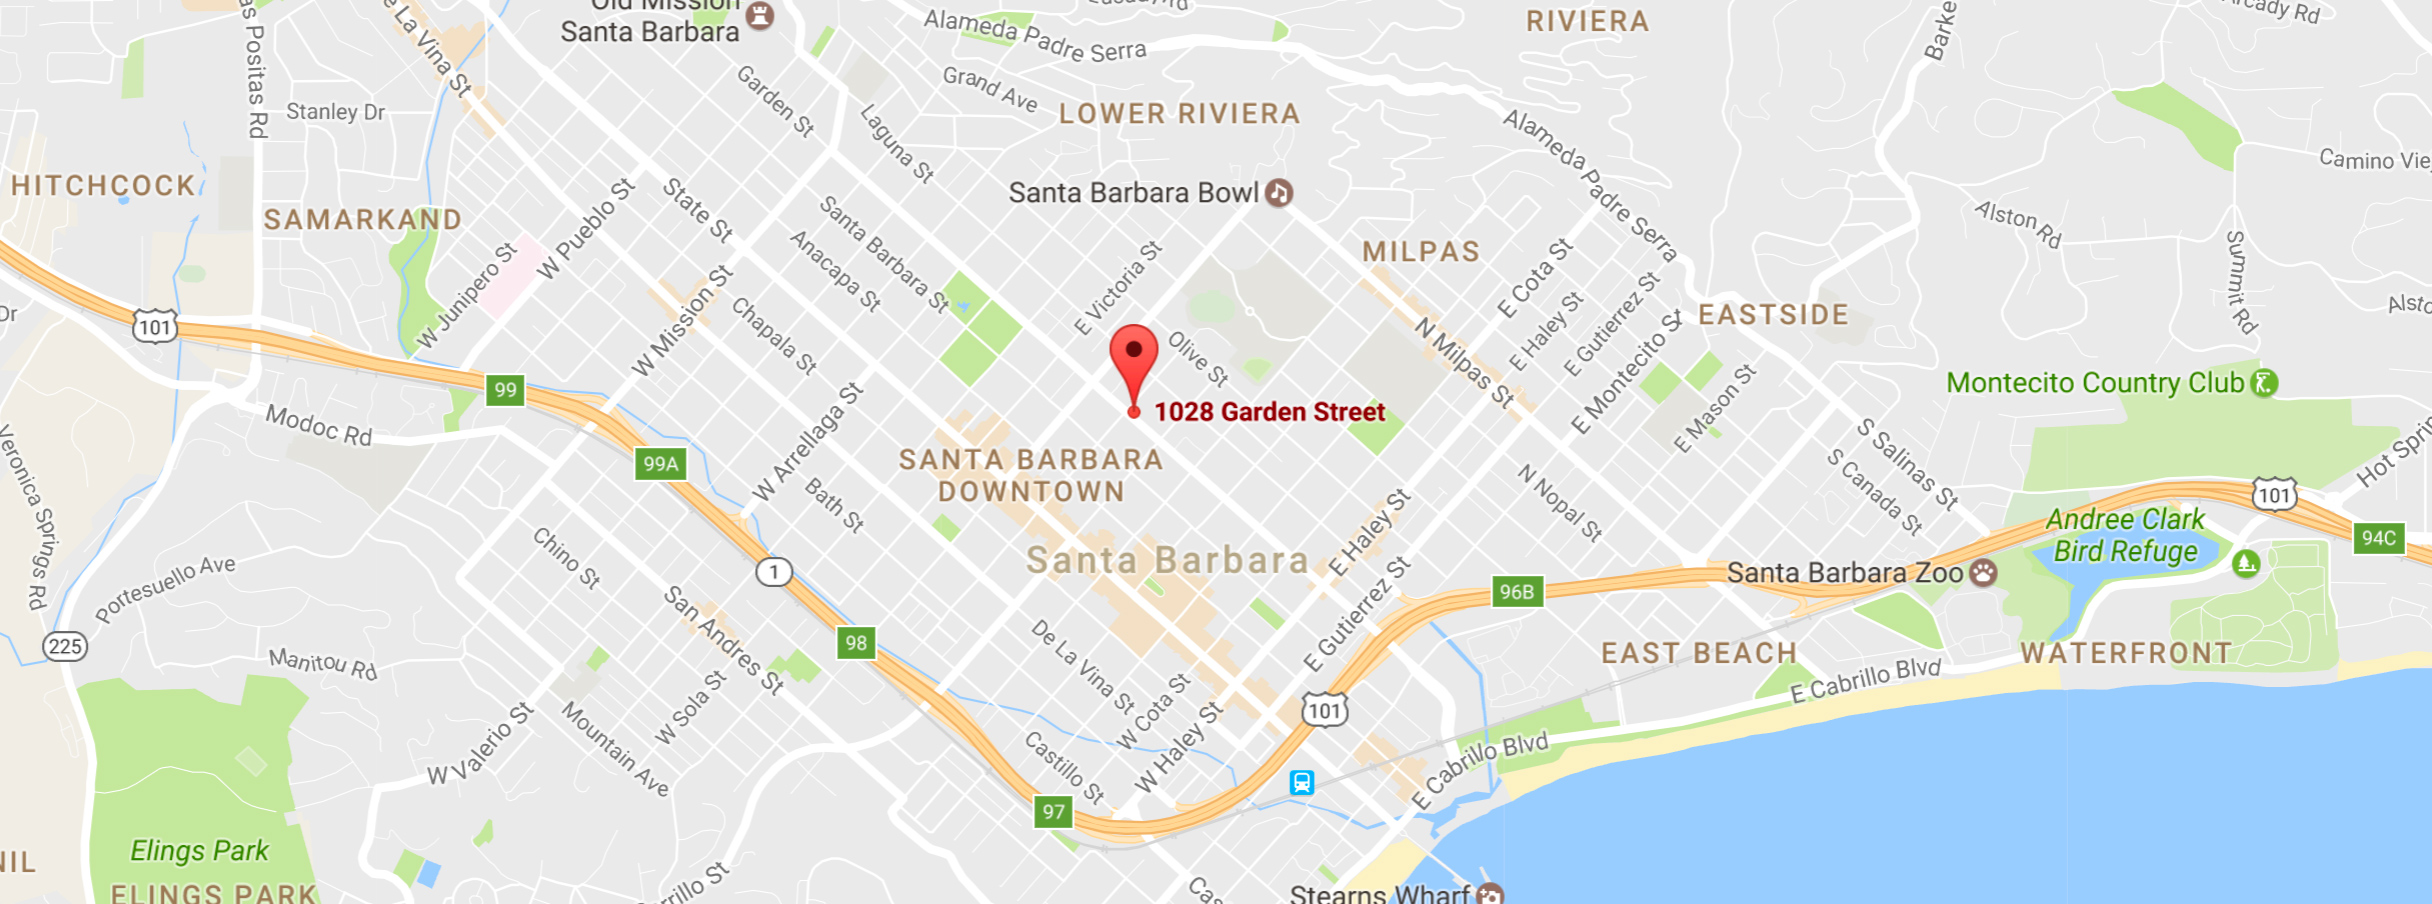 1028 Garden Street, Santa Barbara, CA 93101